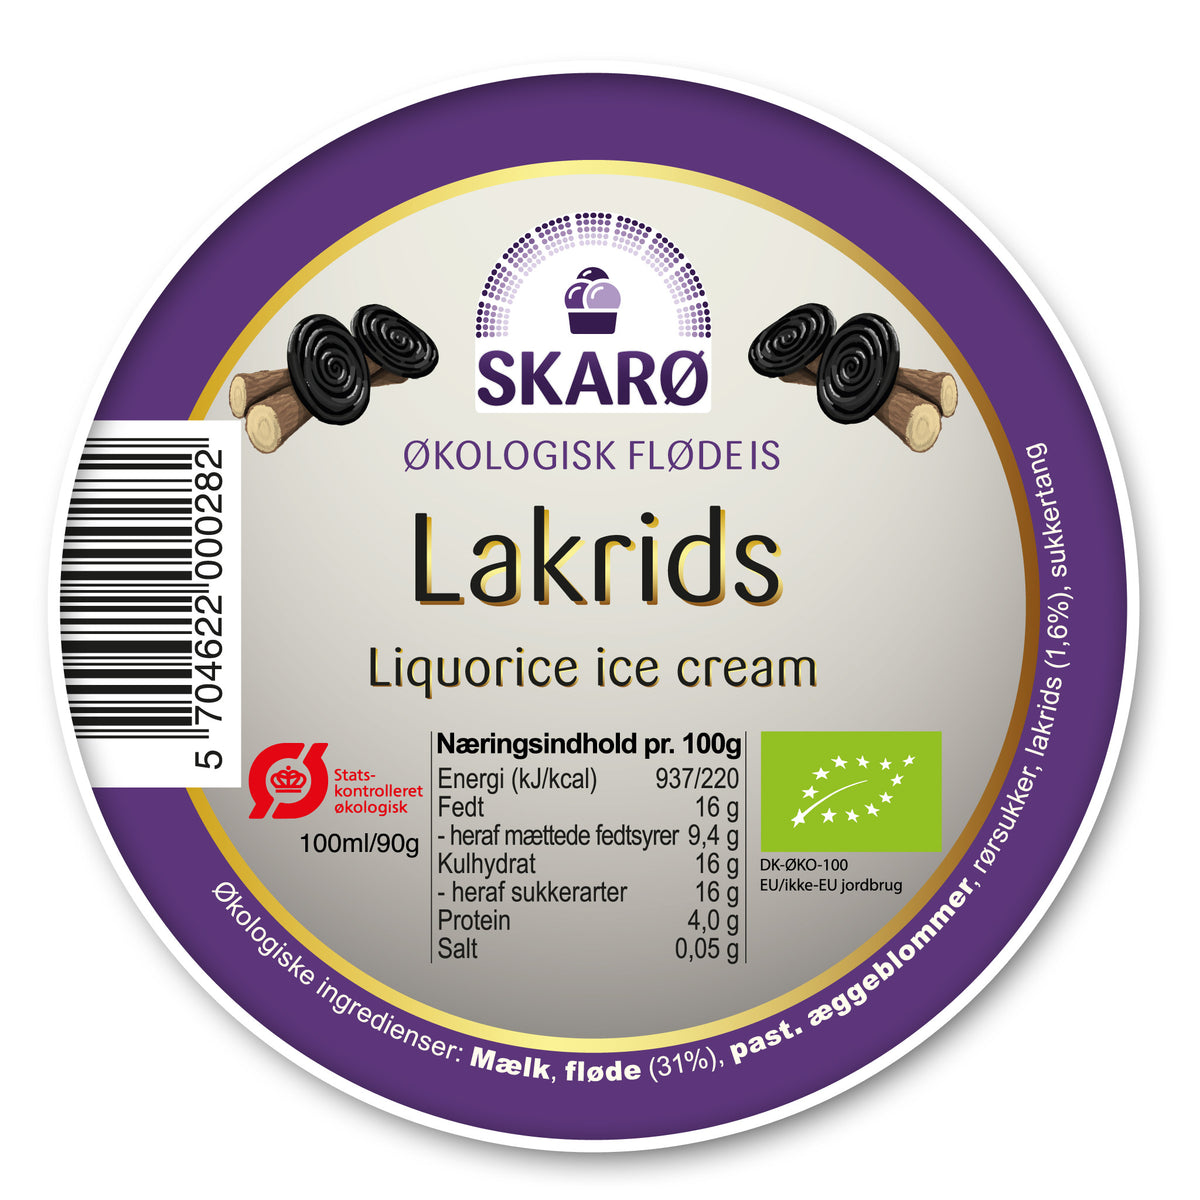 Økologisk Lakrids gourmetflødeis fra Skarø